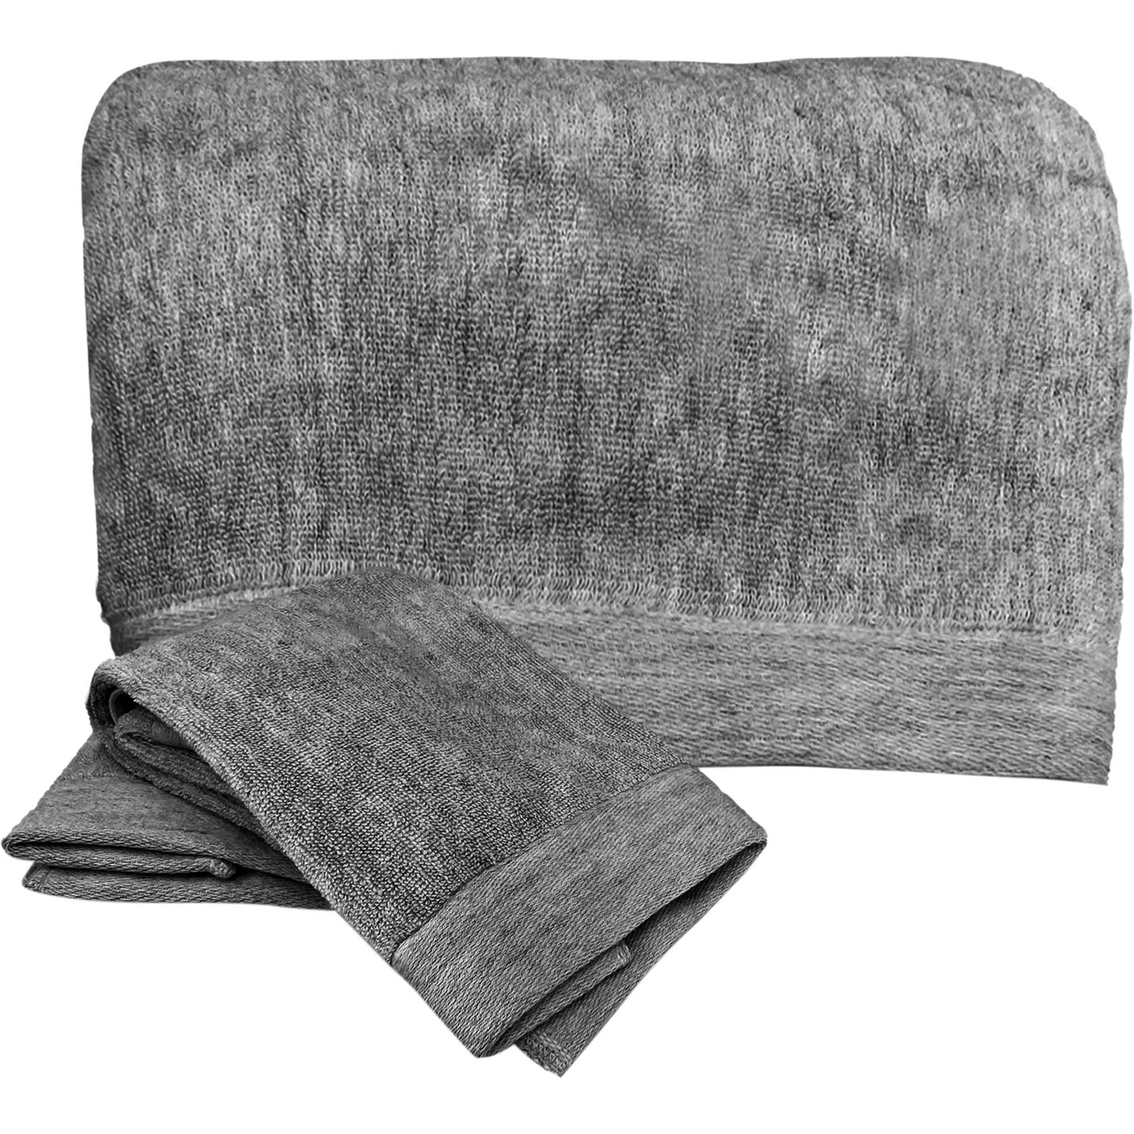 BedVoyage Melange Rayon Bamboo Cotton 3 pc. Towel Set - Image 2 of 3